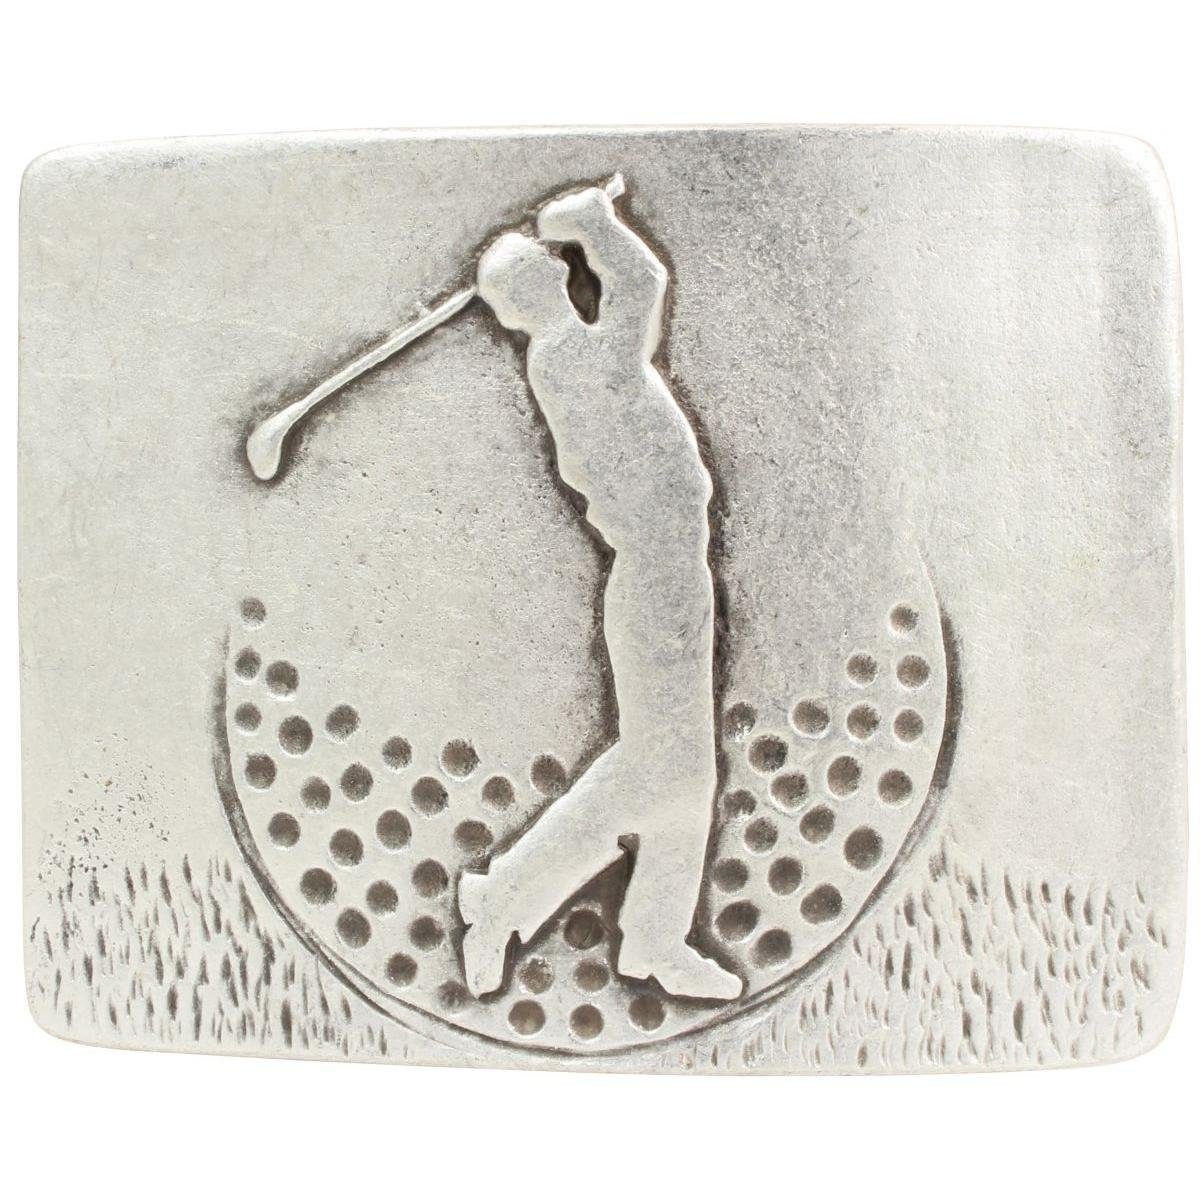 BELTINGER Gürtelschnalle Golfer Buckle Wechselschließe Gürtel Gürtelschließe - 40mm - bi 4,0 cm